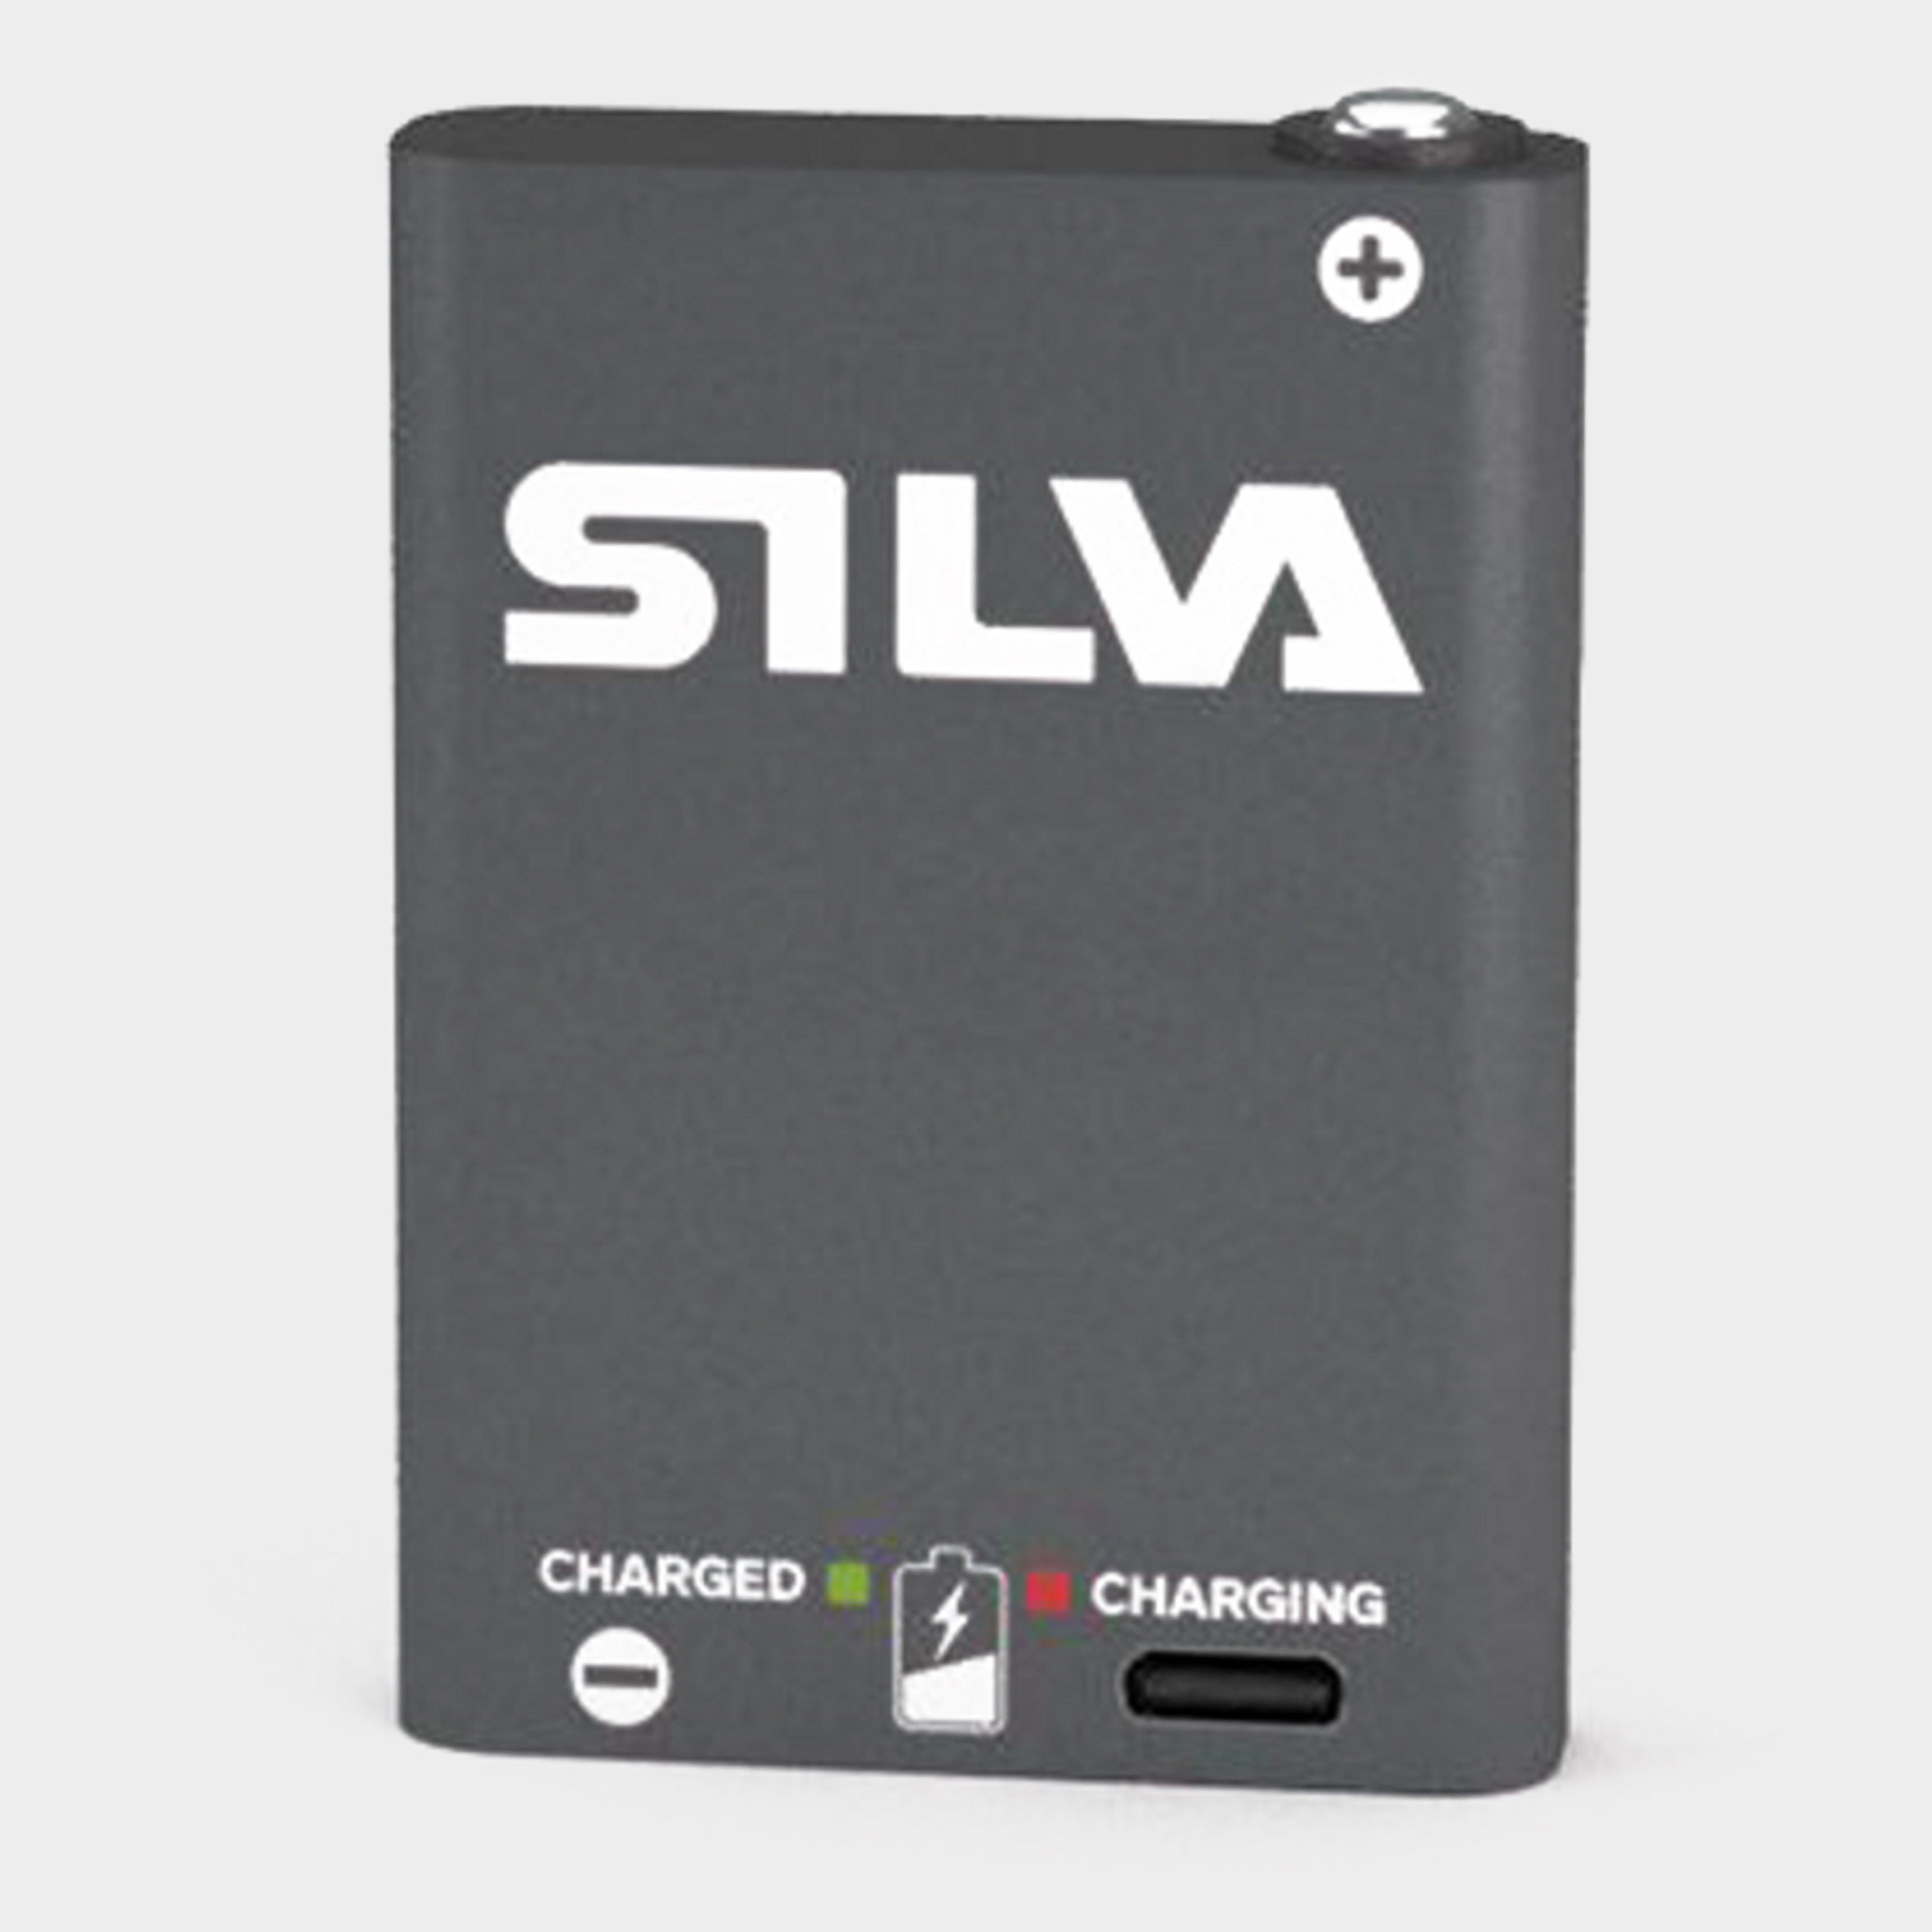 Silva Hybrid Battery 1.25ah - Grey/grey  Grey/grey